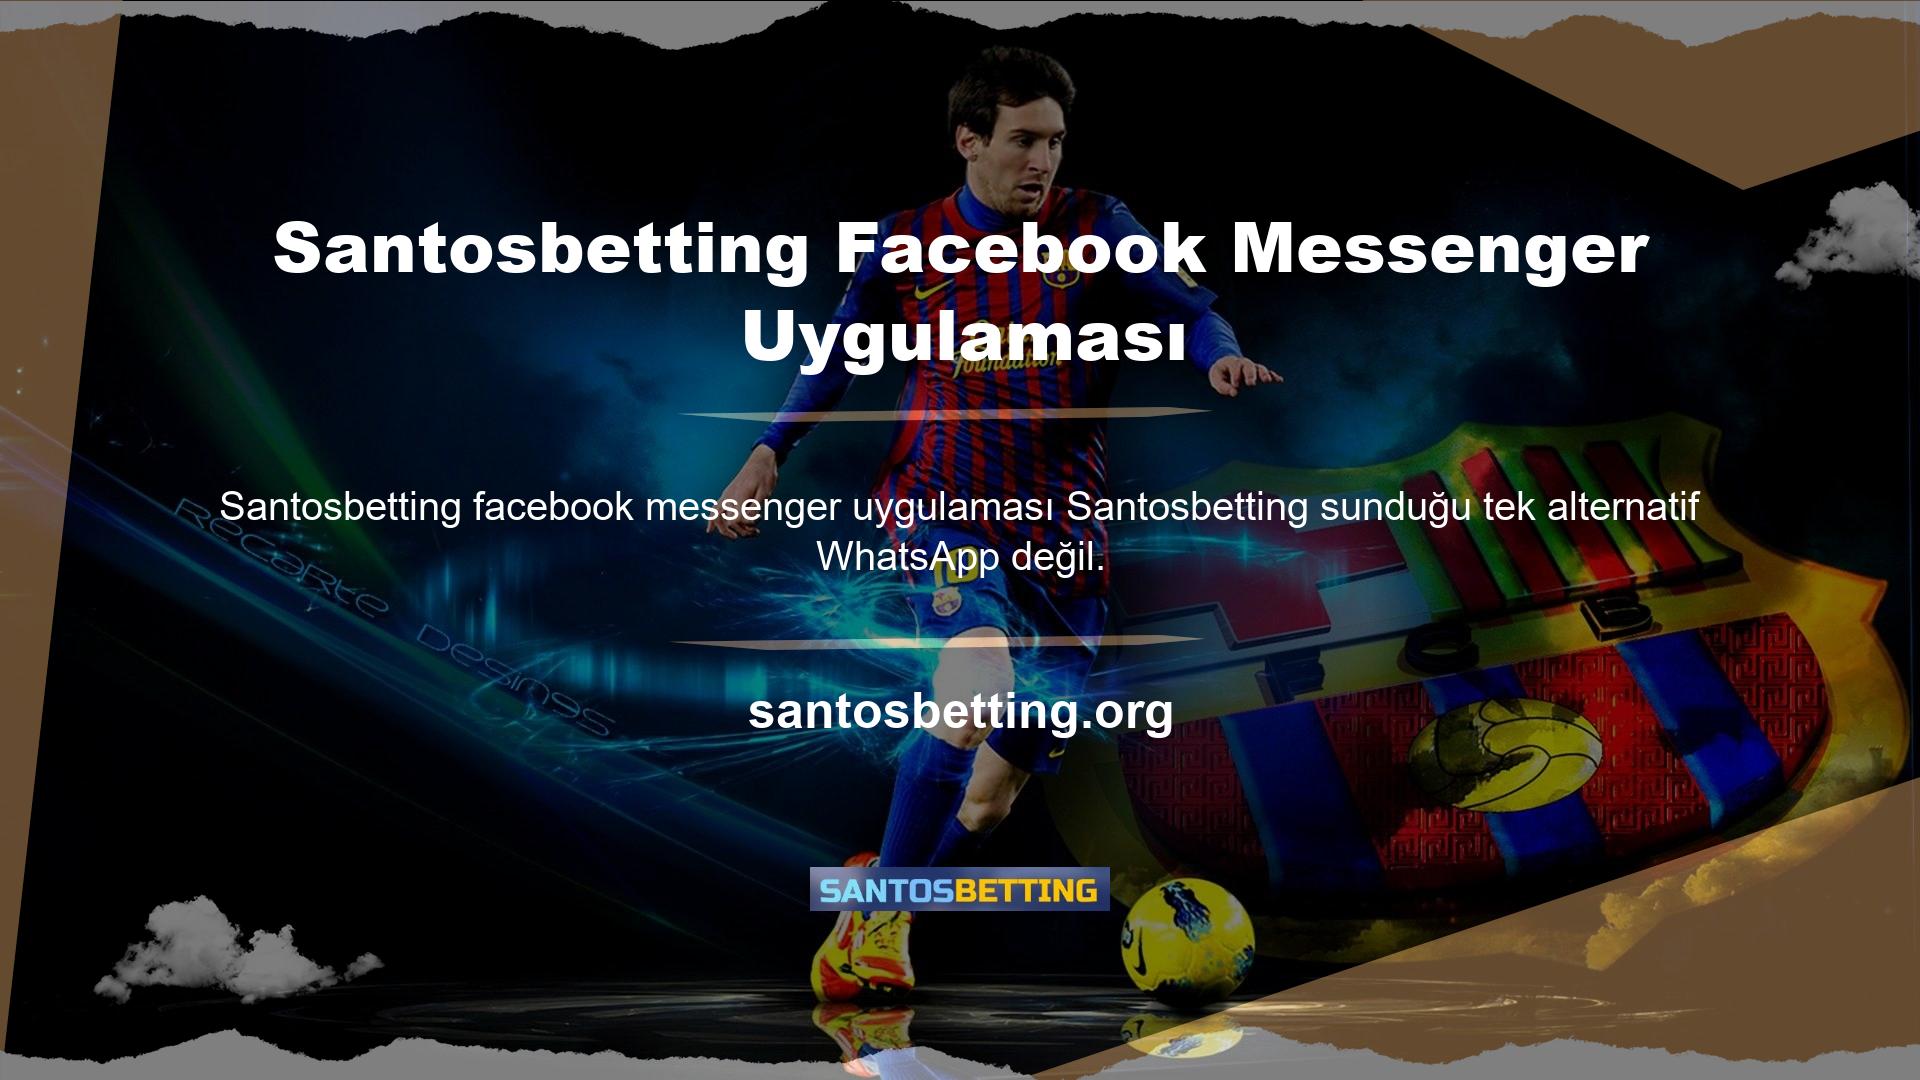 Santosbetting Facebook Messenger uygulaması da çok popüler